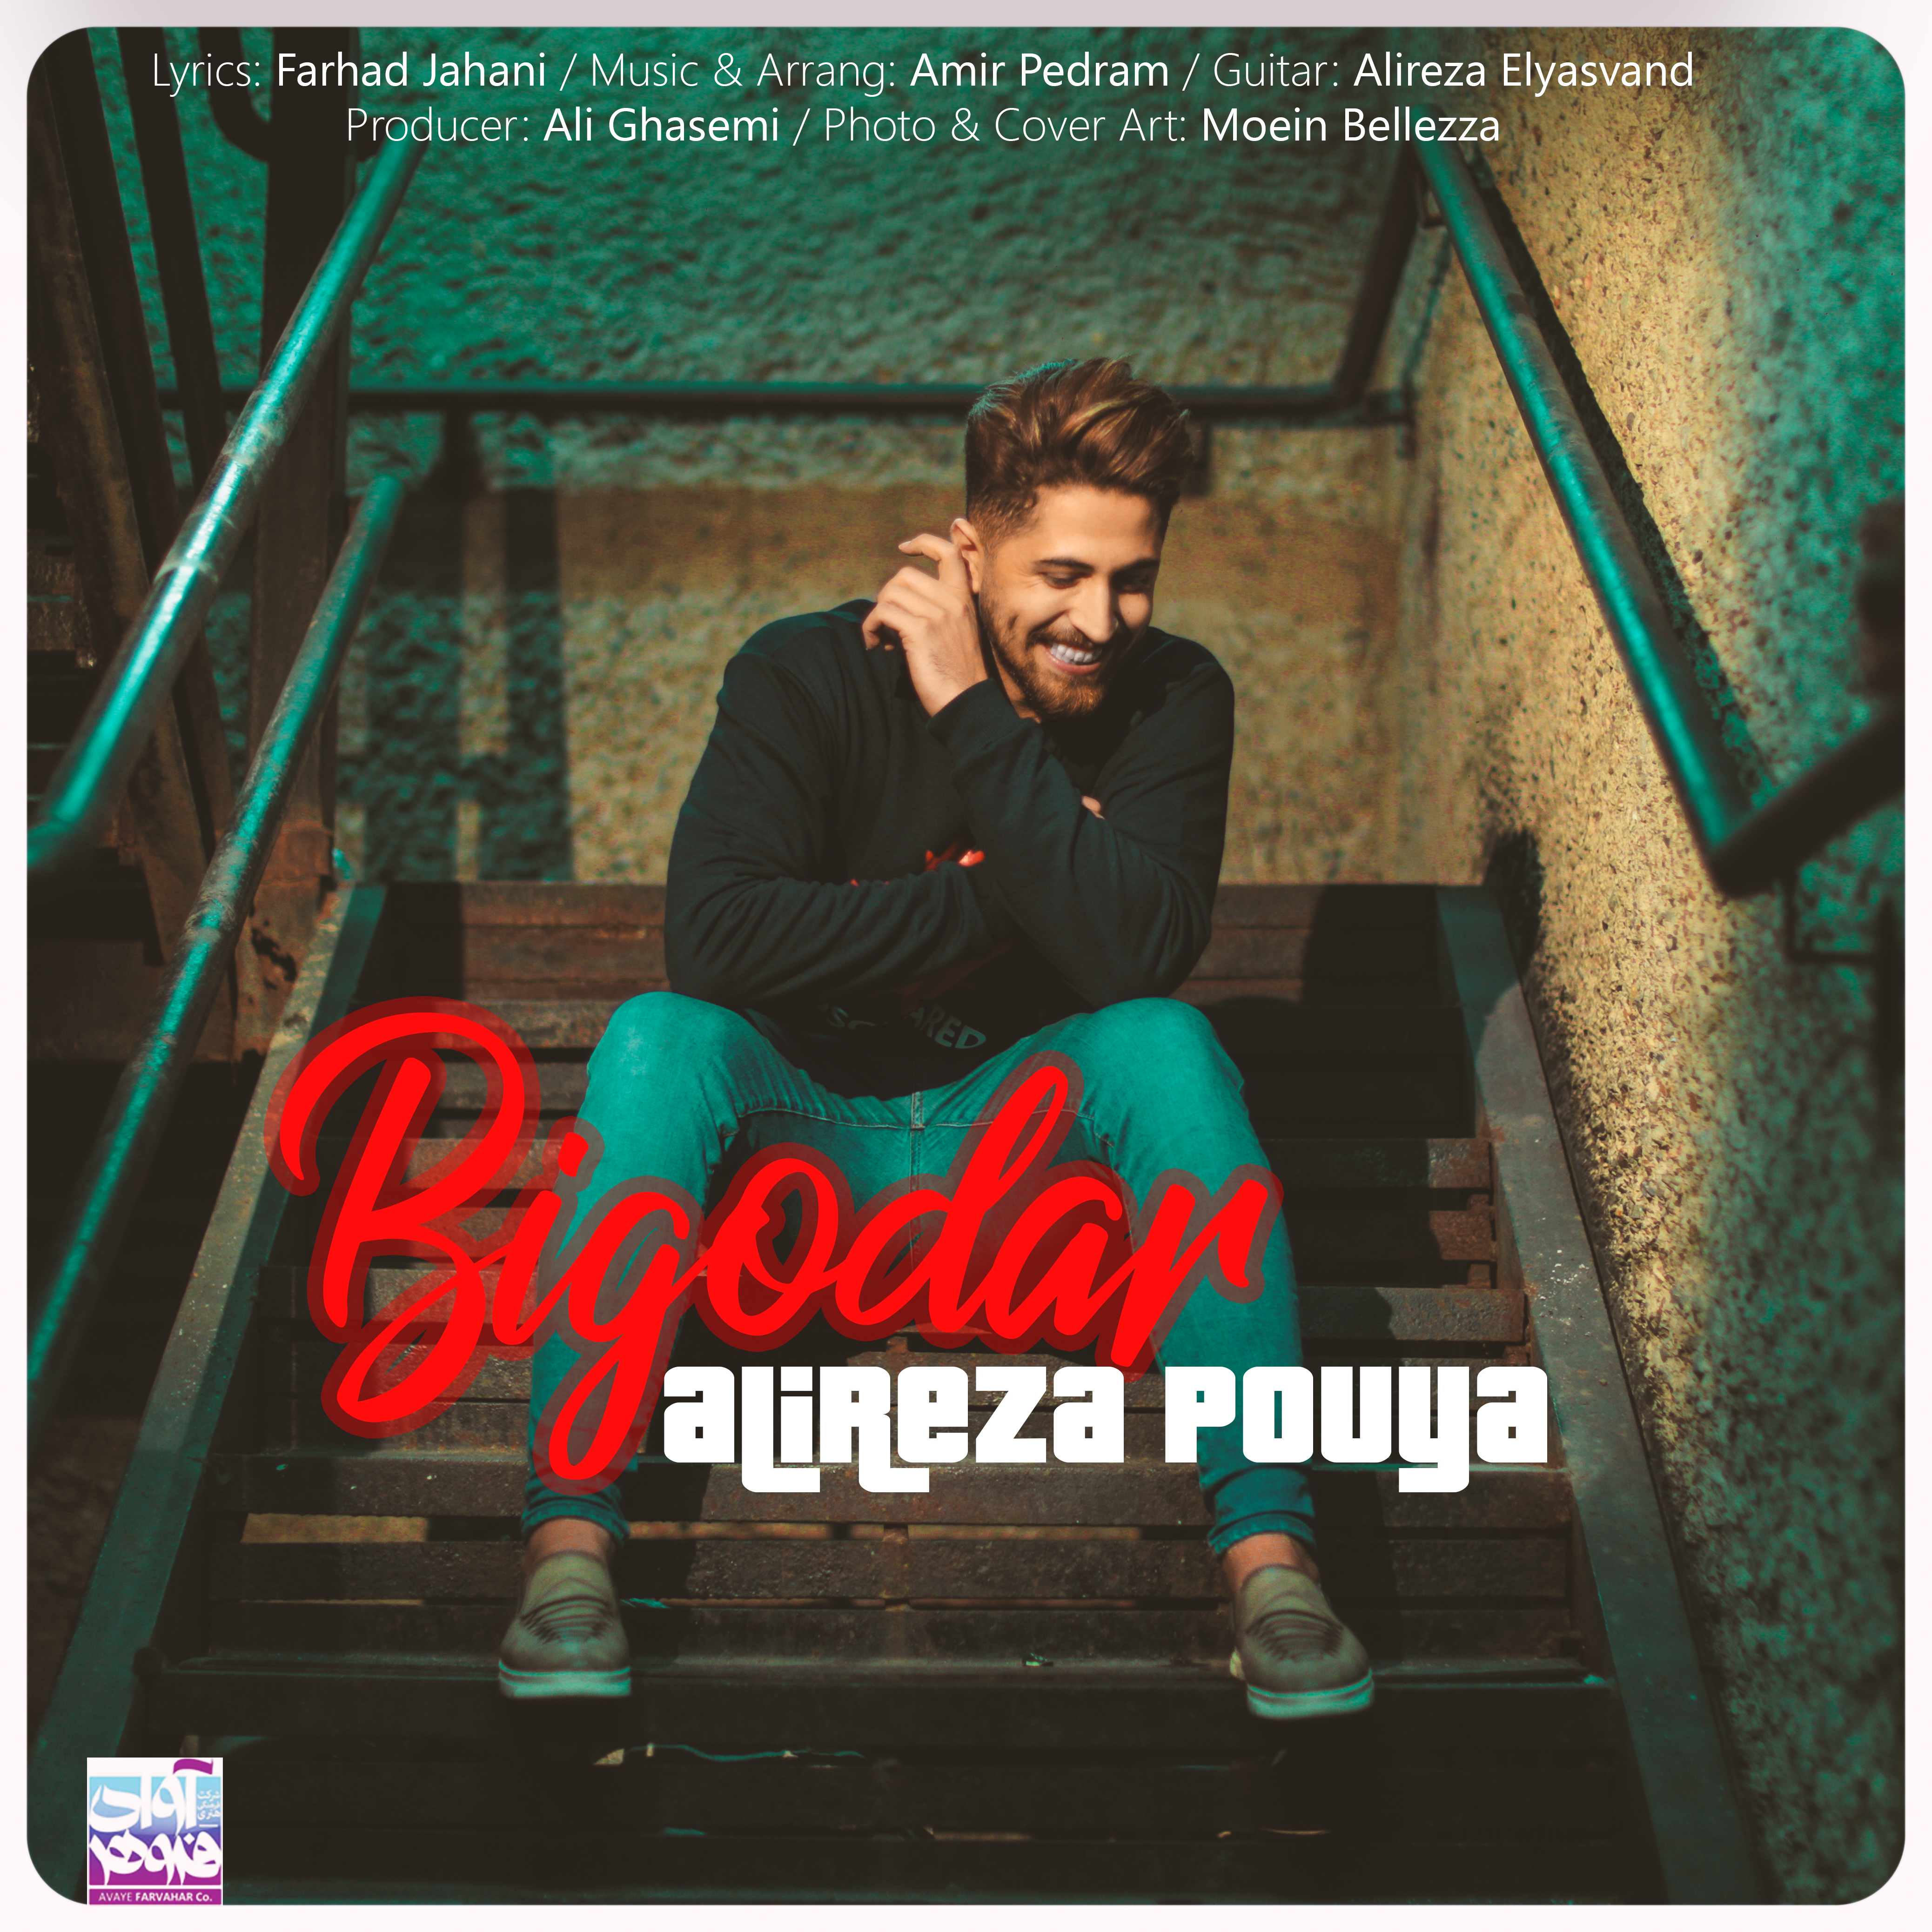  دانلود آهنگ جدید علیرضا پویا - بیگدار | Download New Music By Alireza Pouya - Bigodar